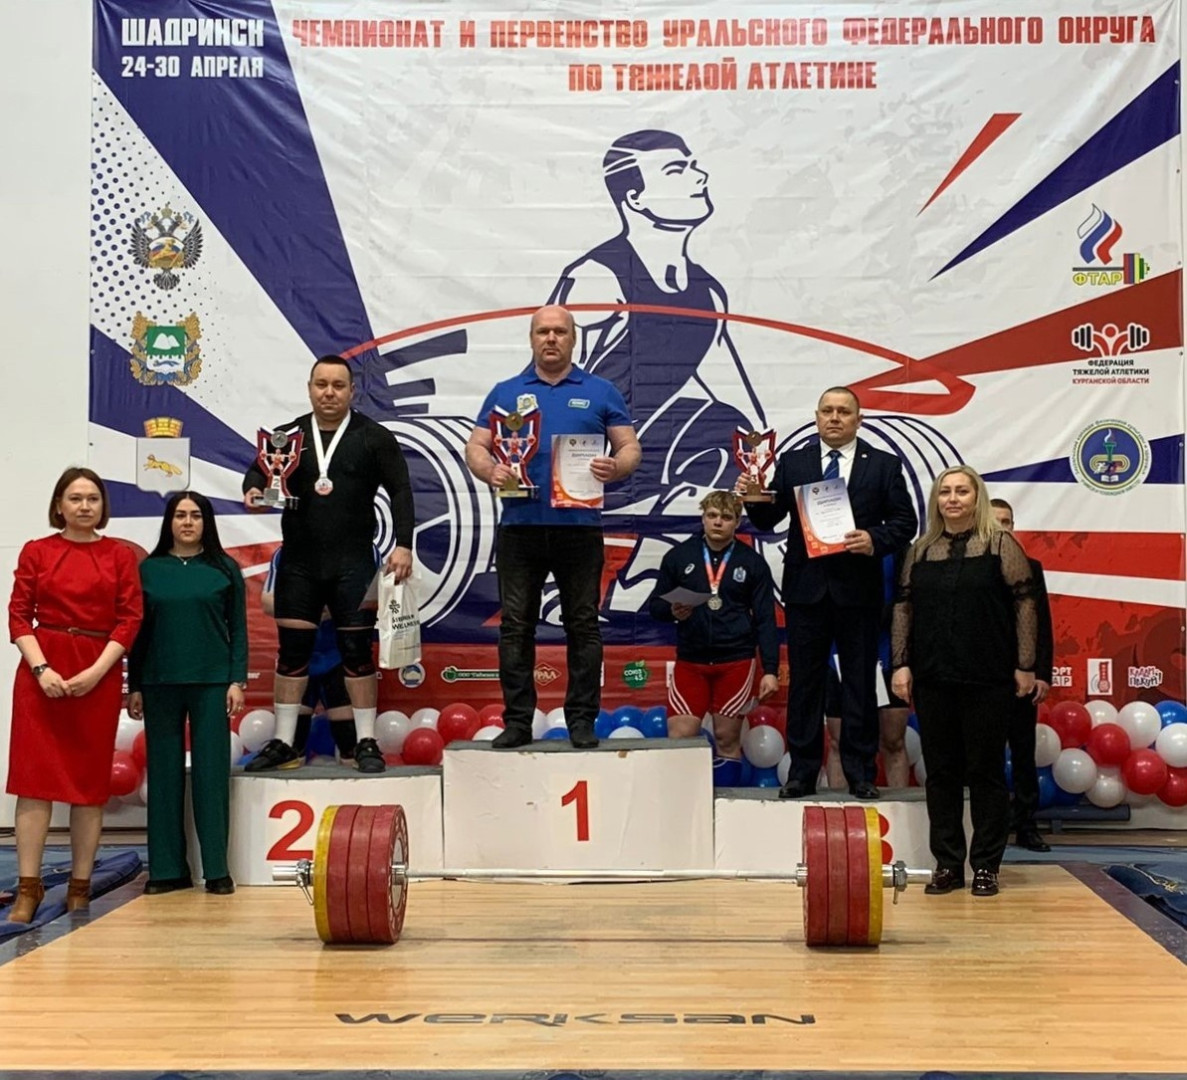 Штангисты Сургутского района завоевали 11 медалей на Чемпионате и Первенстве УрФО по тяжелой атлетике.